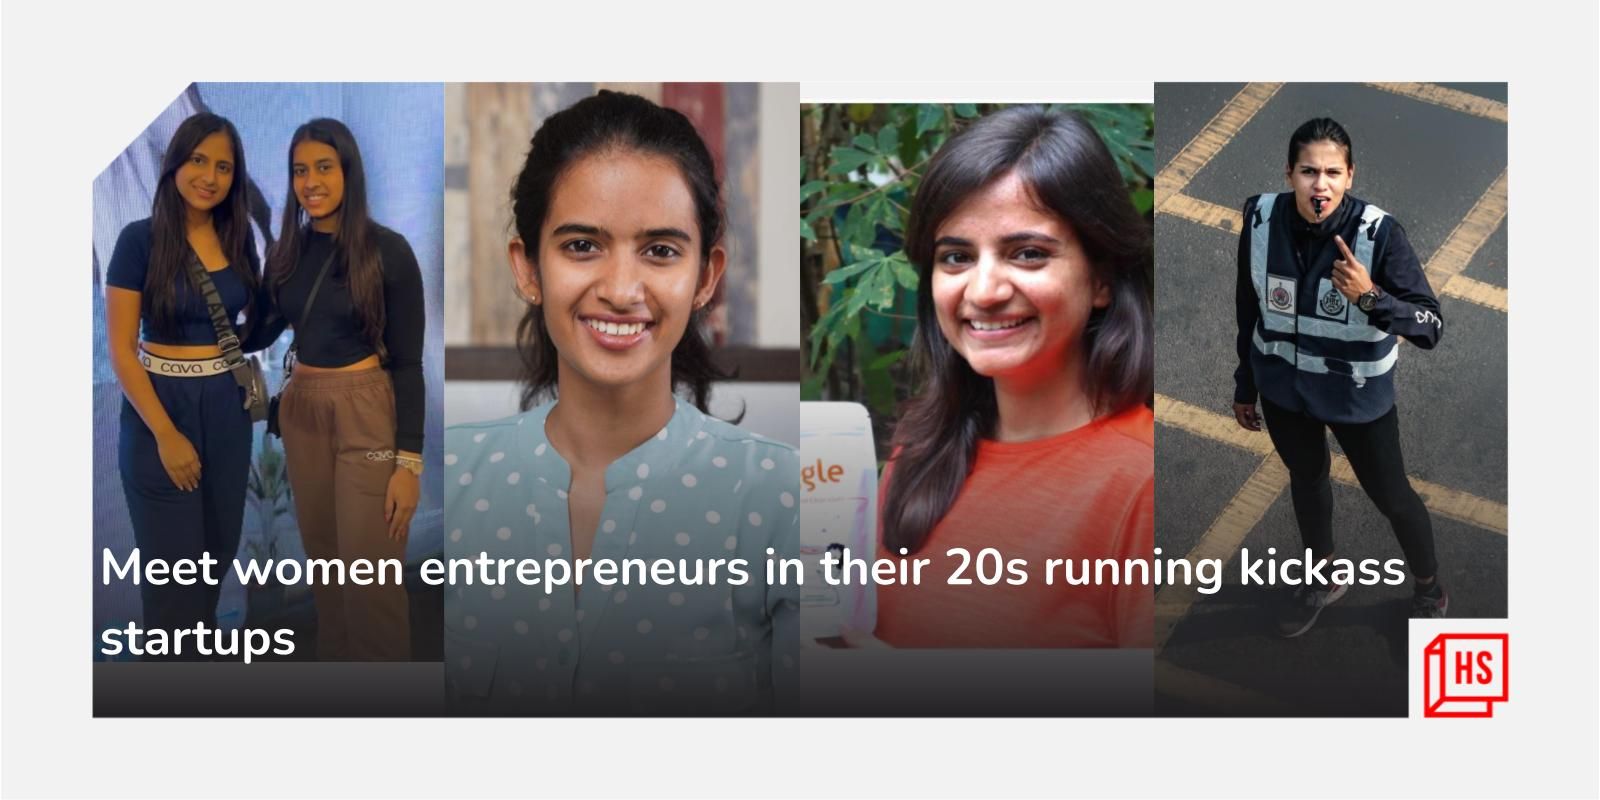 Meet women entrepreneurs in their 20s running kickass startups
